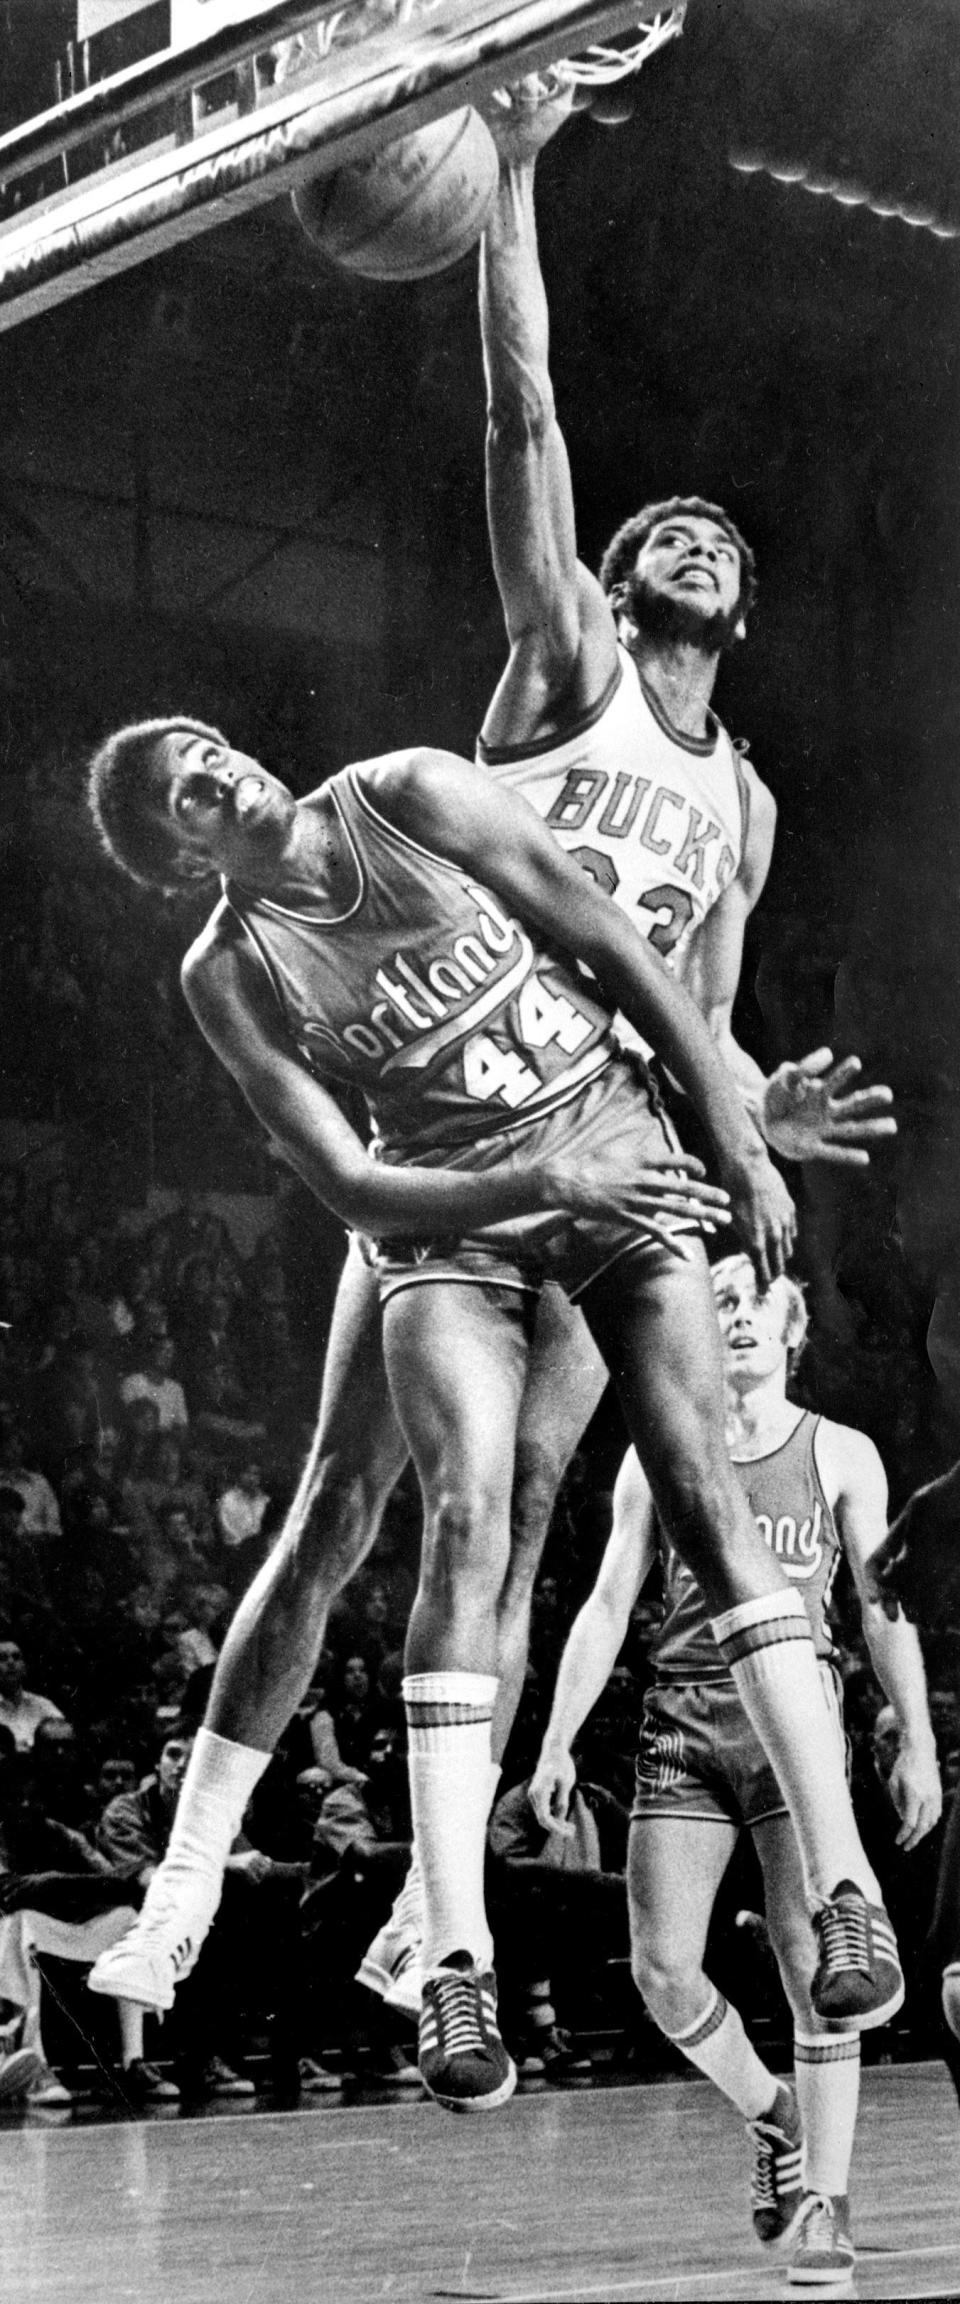 Kareem Abdul-Jabbar dunks the ball over Portland's Ollie Johnson in November of 1973.